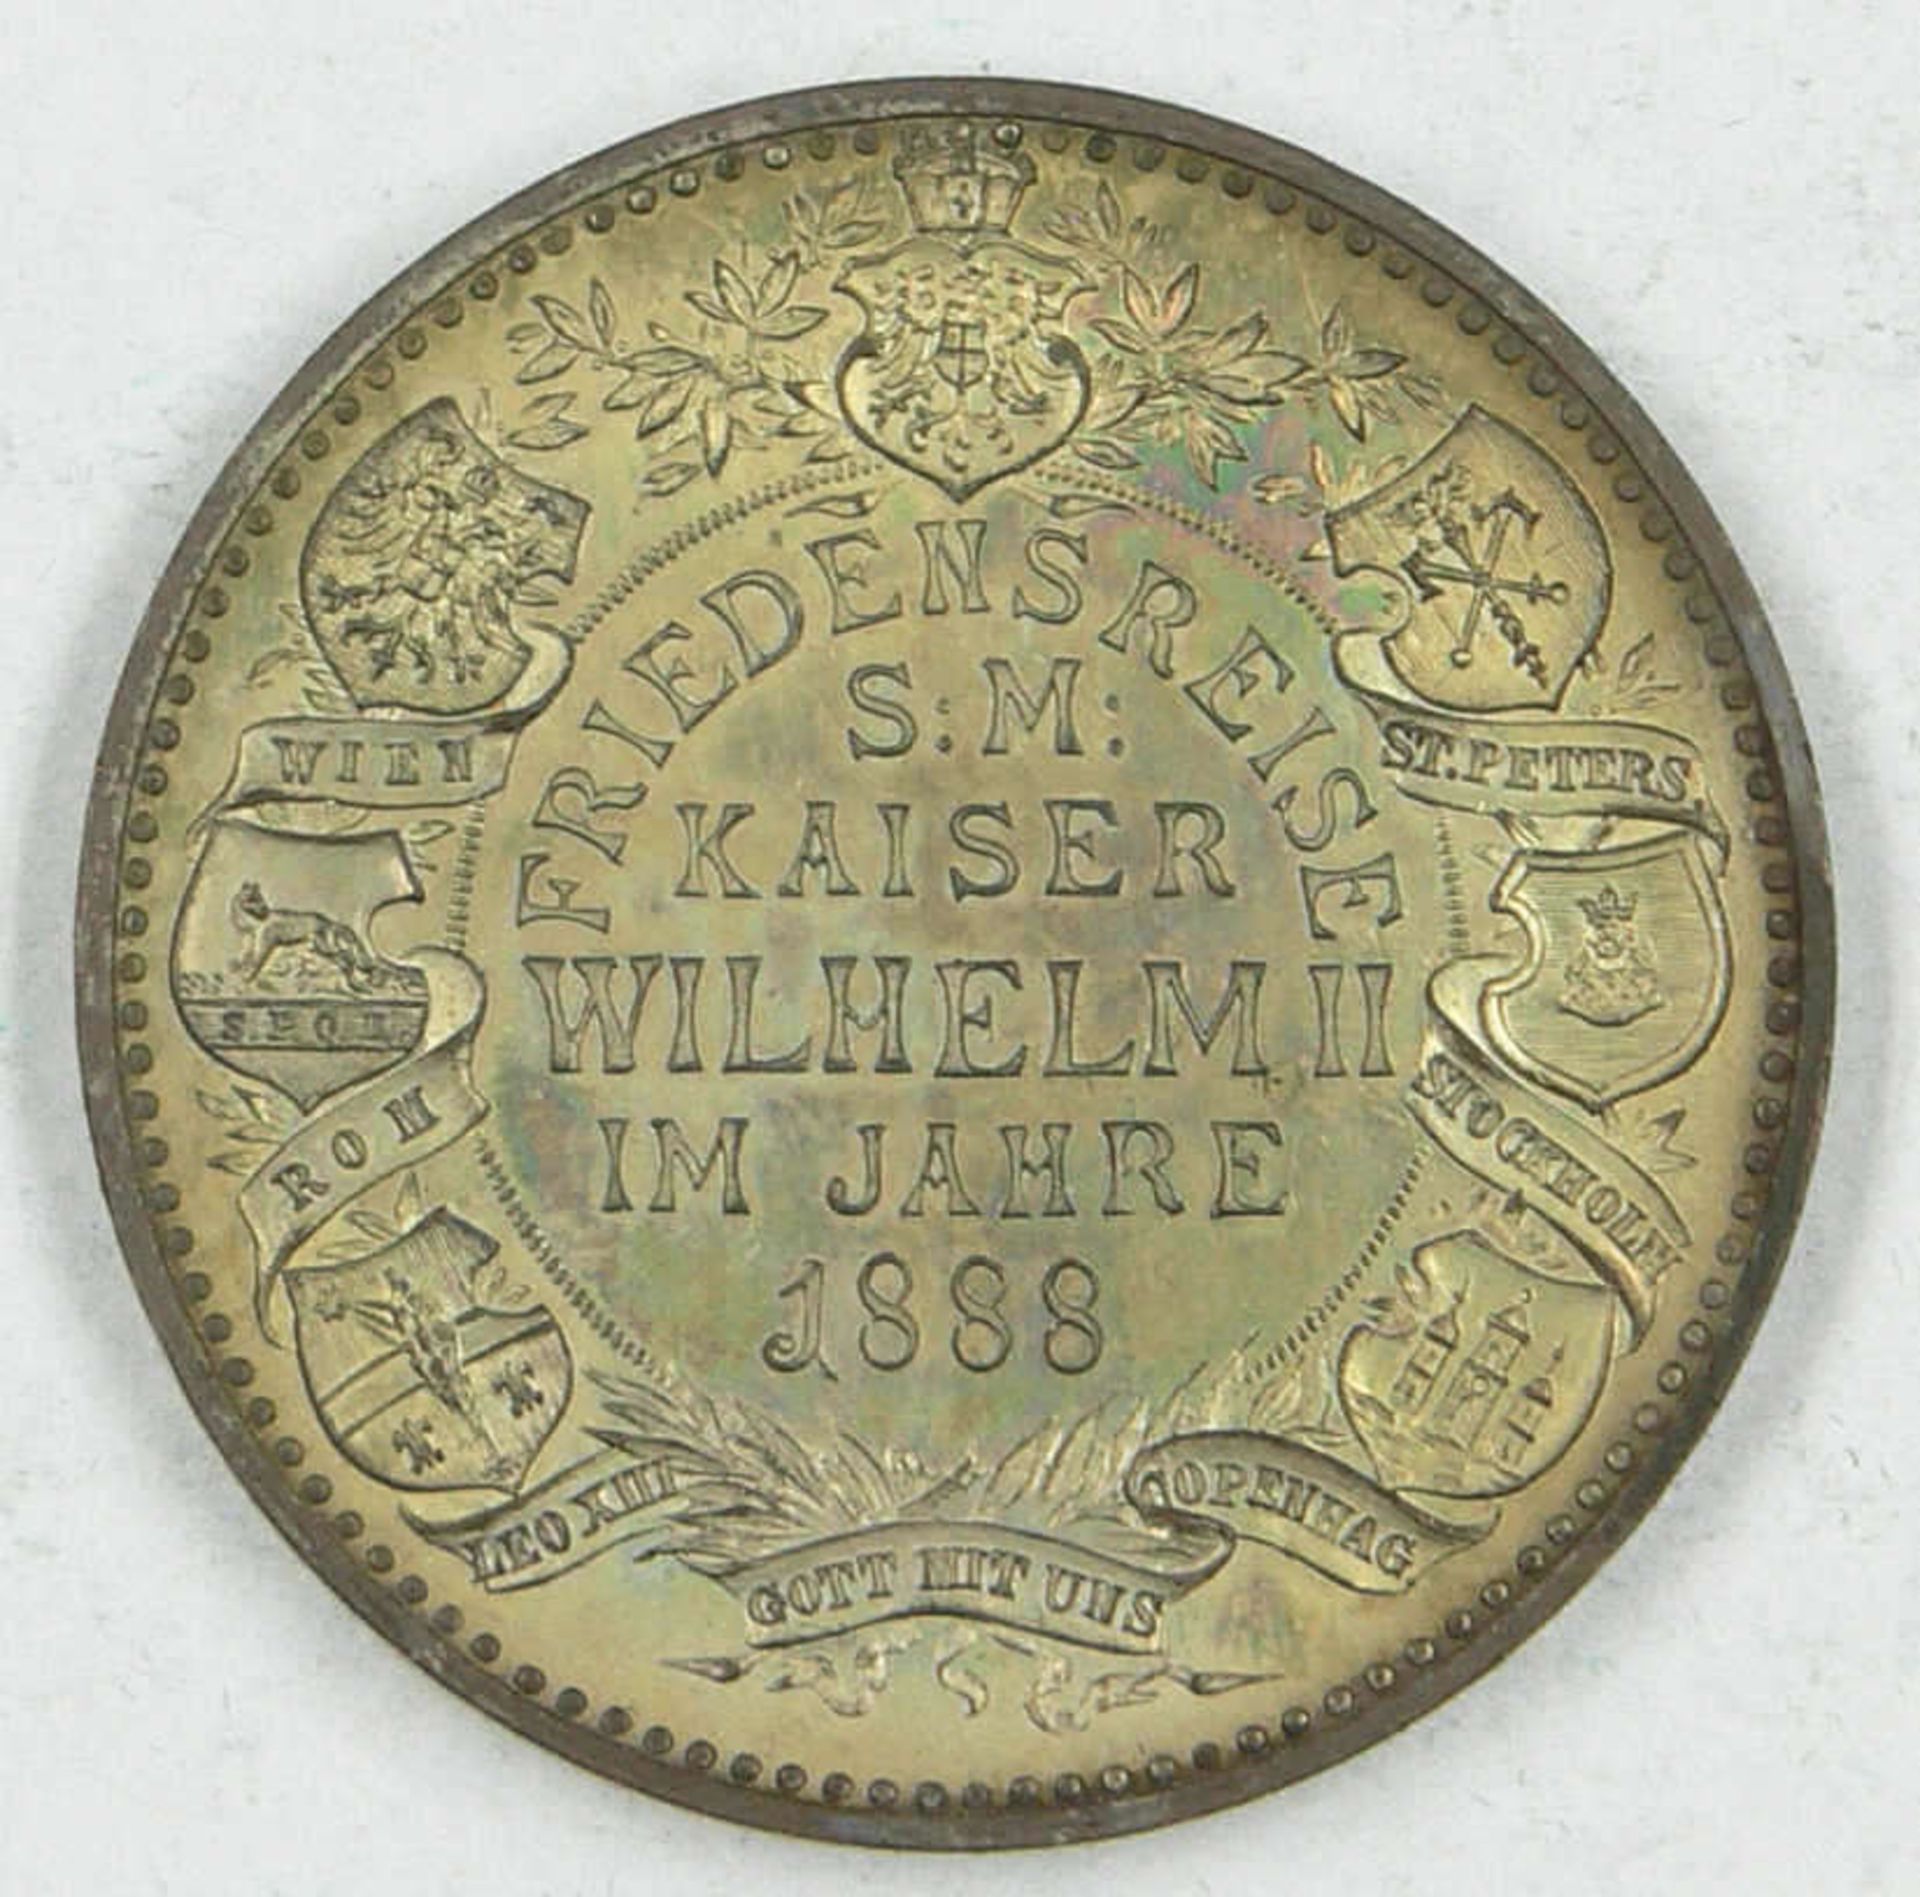 Medaille Deutschland 1888, Friedensreise Kaiser Wilhelm II. 1888, Kat.Nr. Marienbg. 6848, Bronze - Bild 2 aus 2